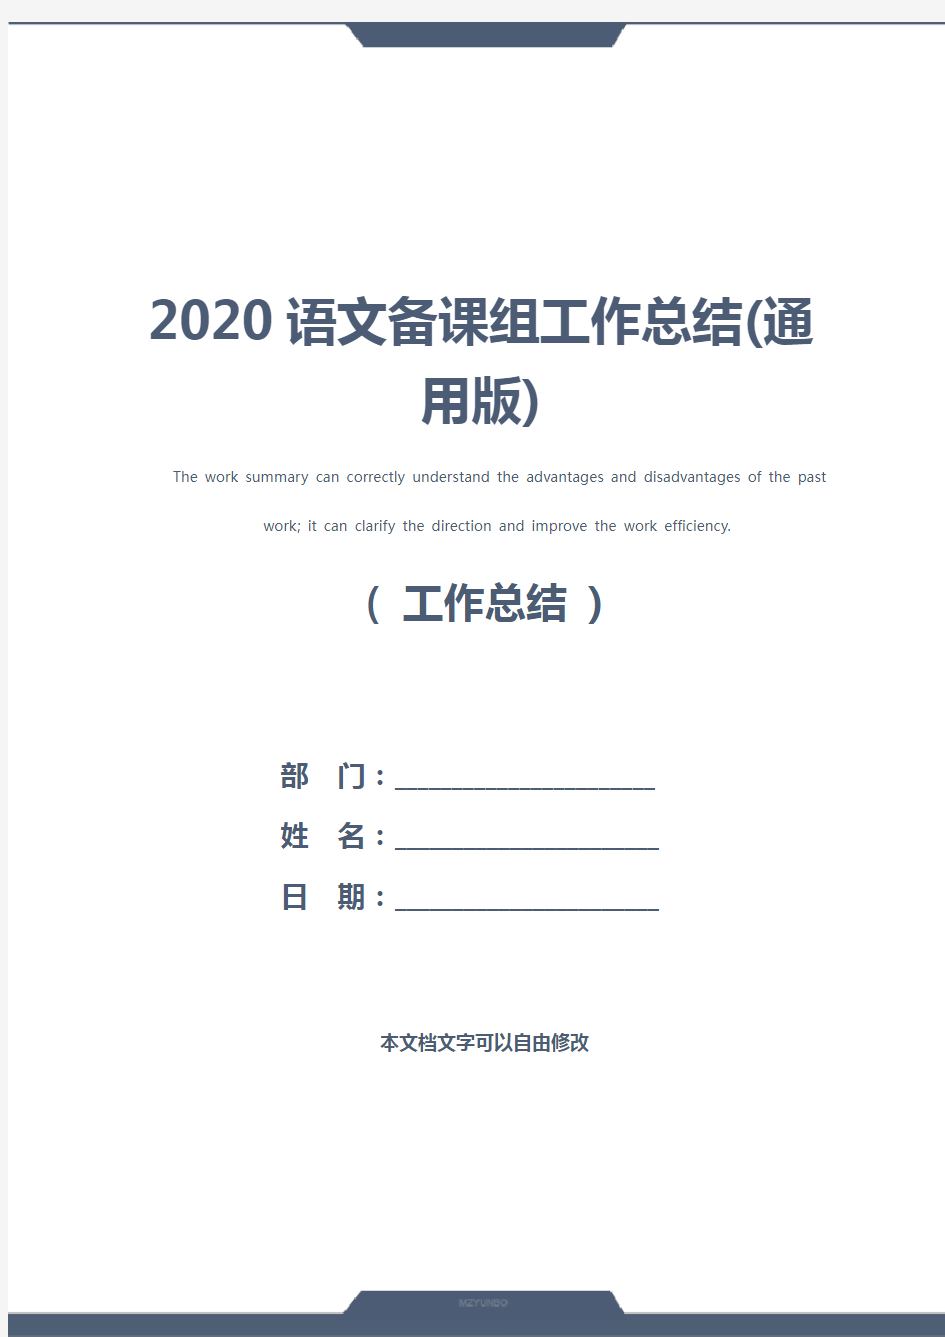 2020语文备课组工作总结(通用版)